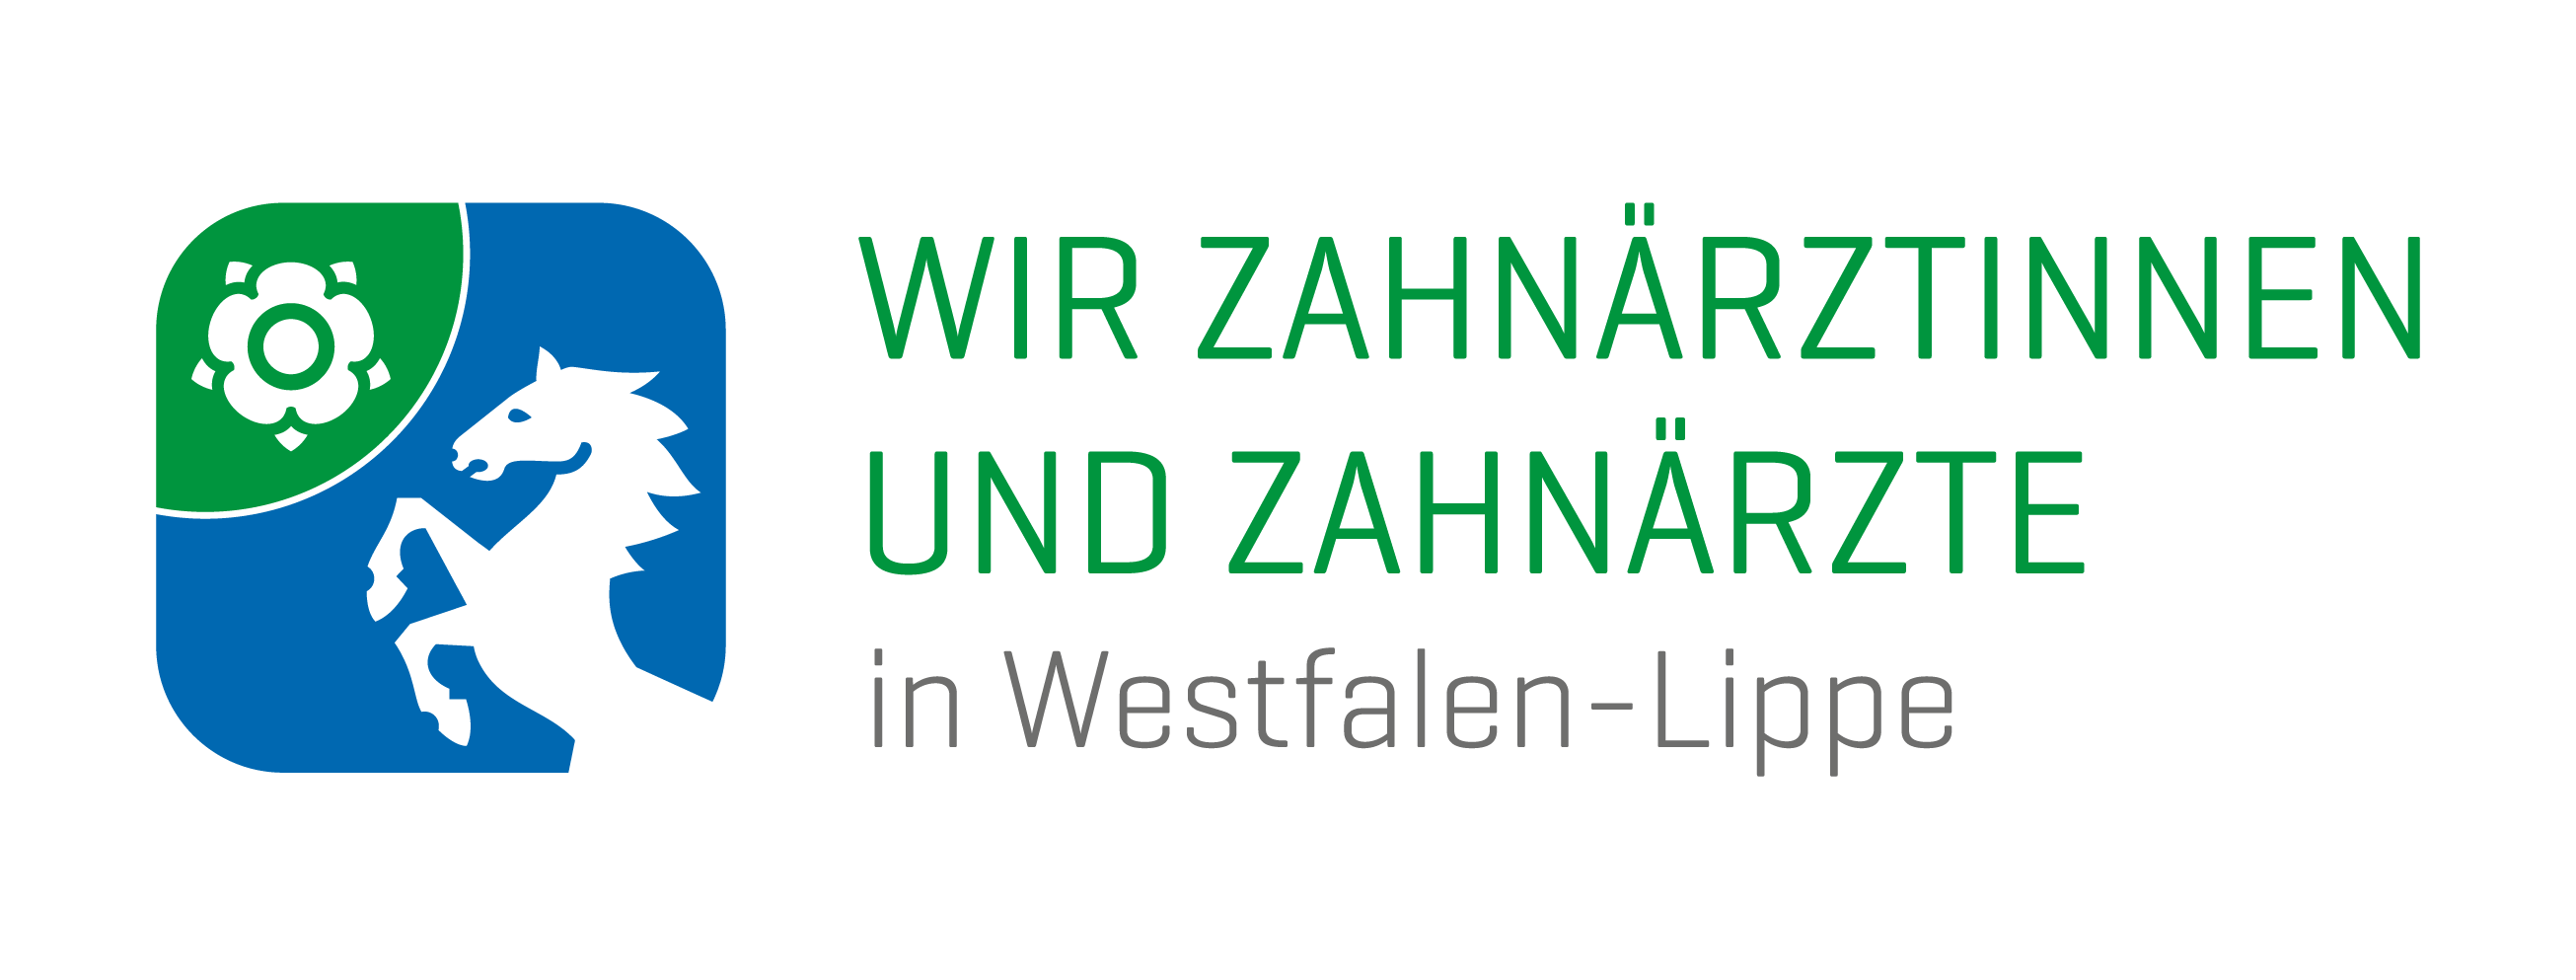 KZVWL ZÄKWL - Zahnärzte in Westfalen-Lippe